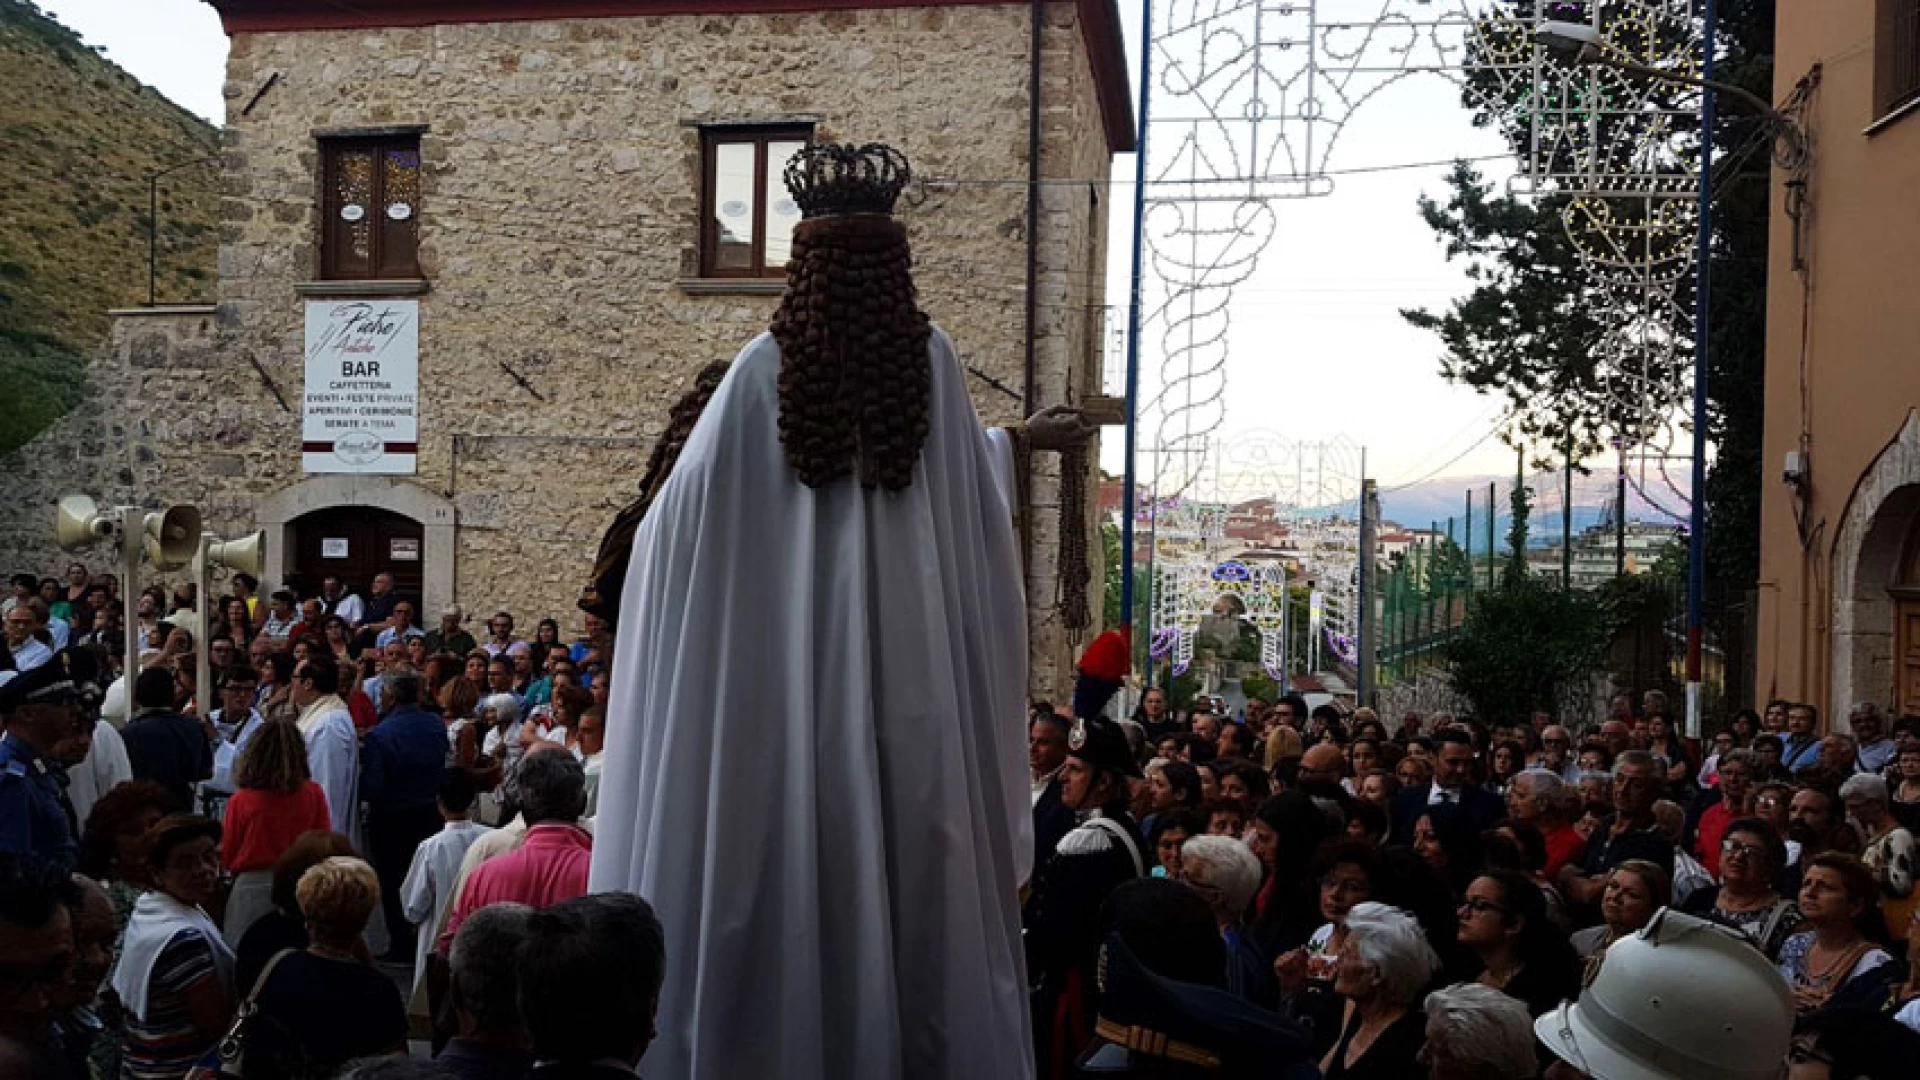 Venafro: la città venera la Madonna del Carmine. Festeggiamenti riusciti in città. Il nostro contributo video.